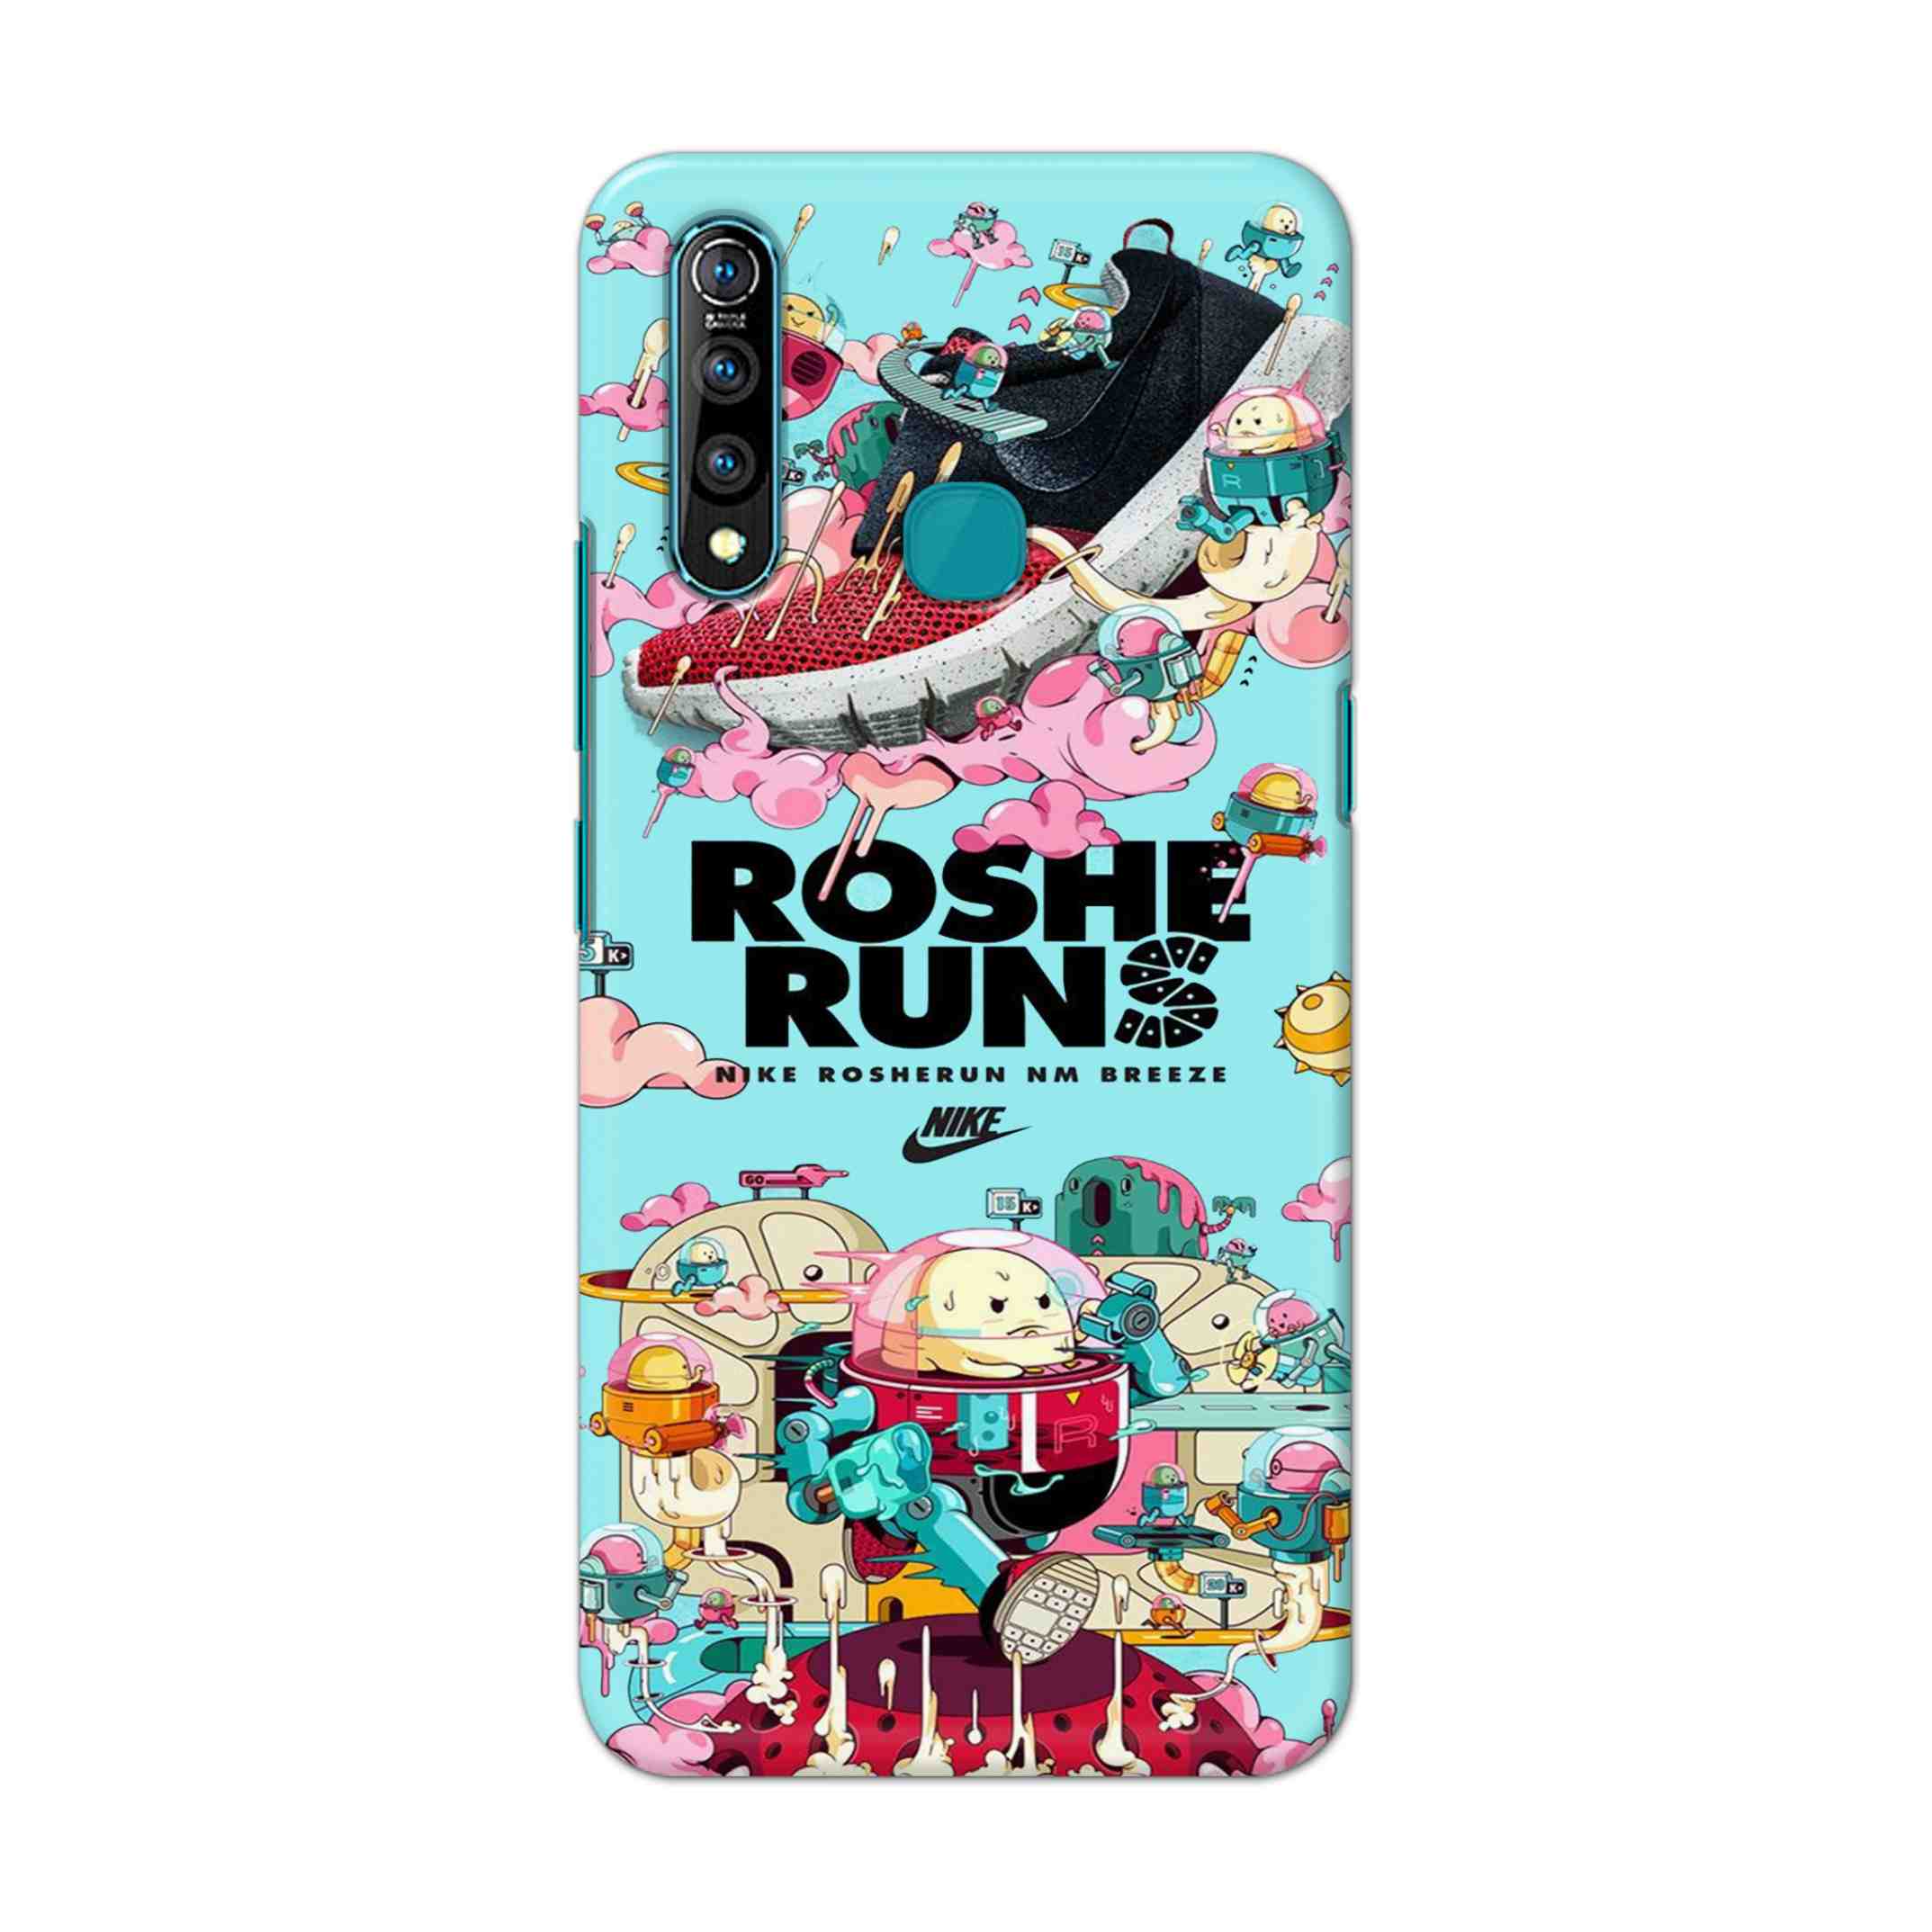 Buy Roshe Runs Hard Back Mobile Phone Case Cover For Vivo Z1 pro Online